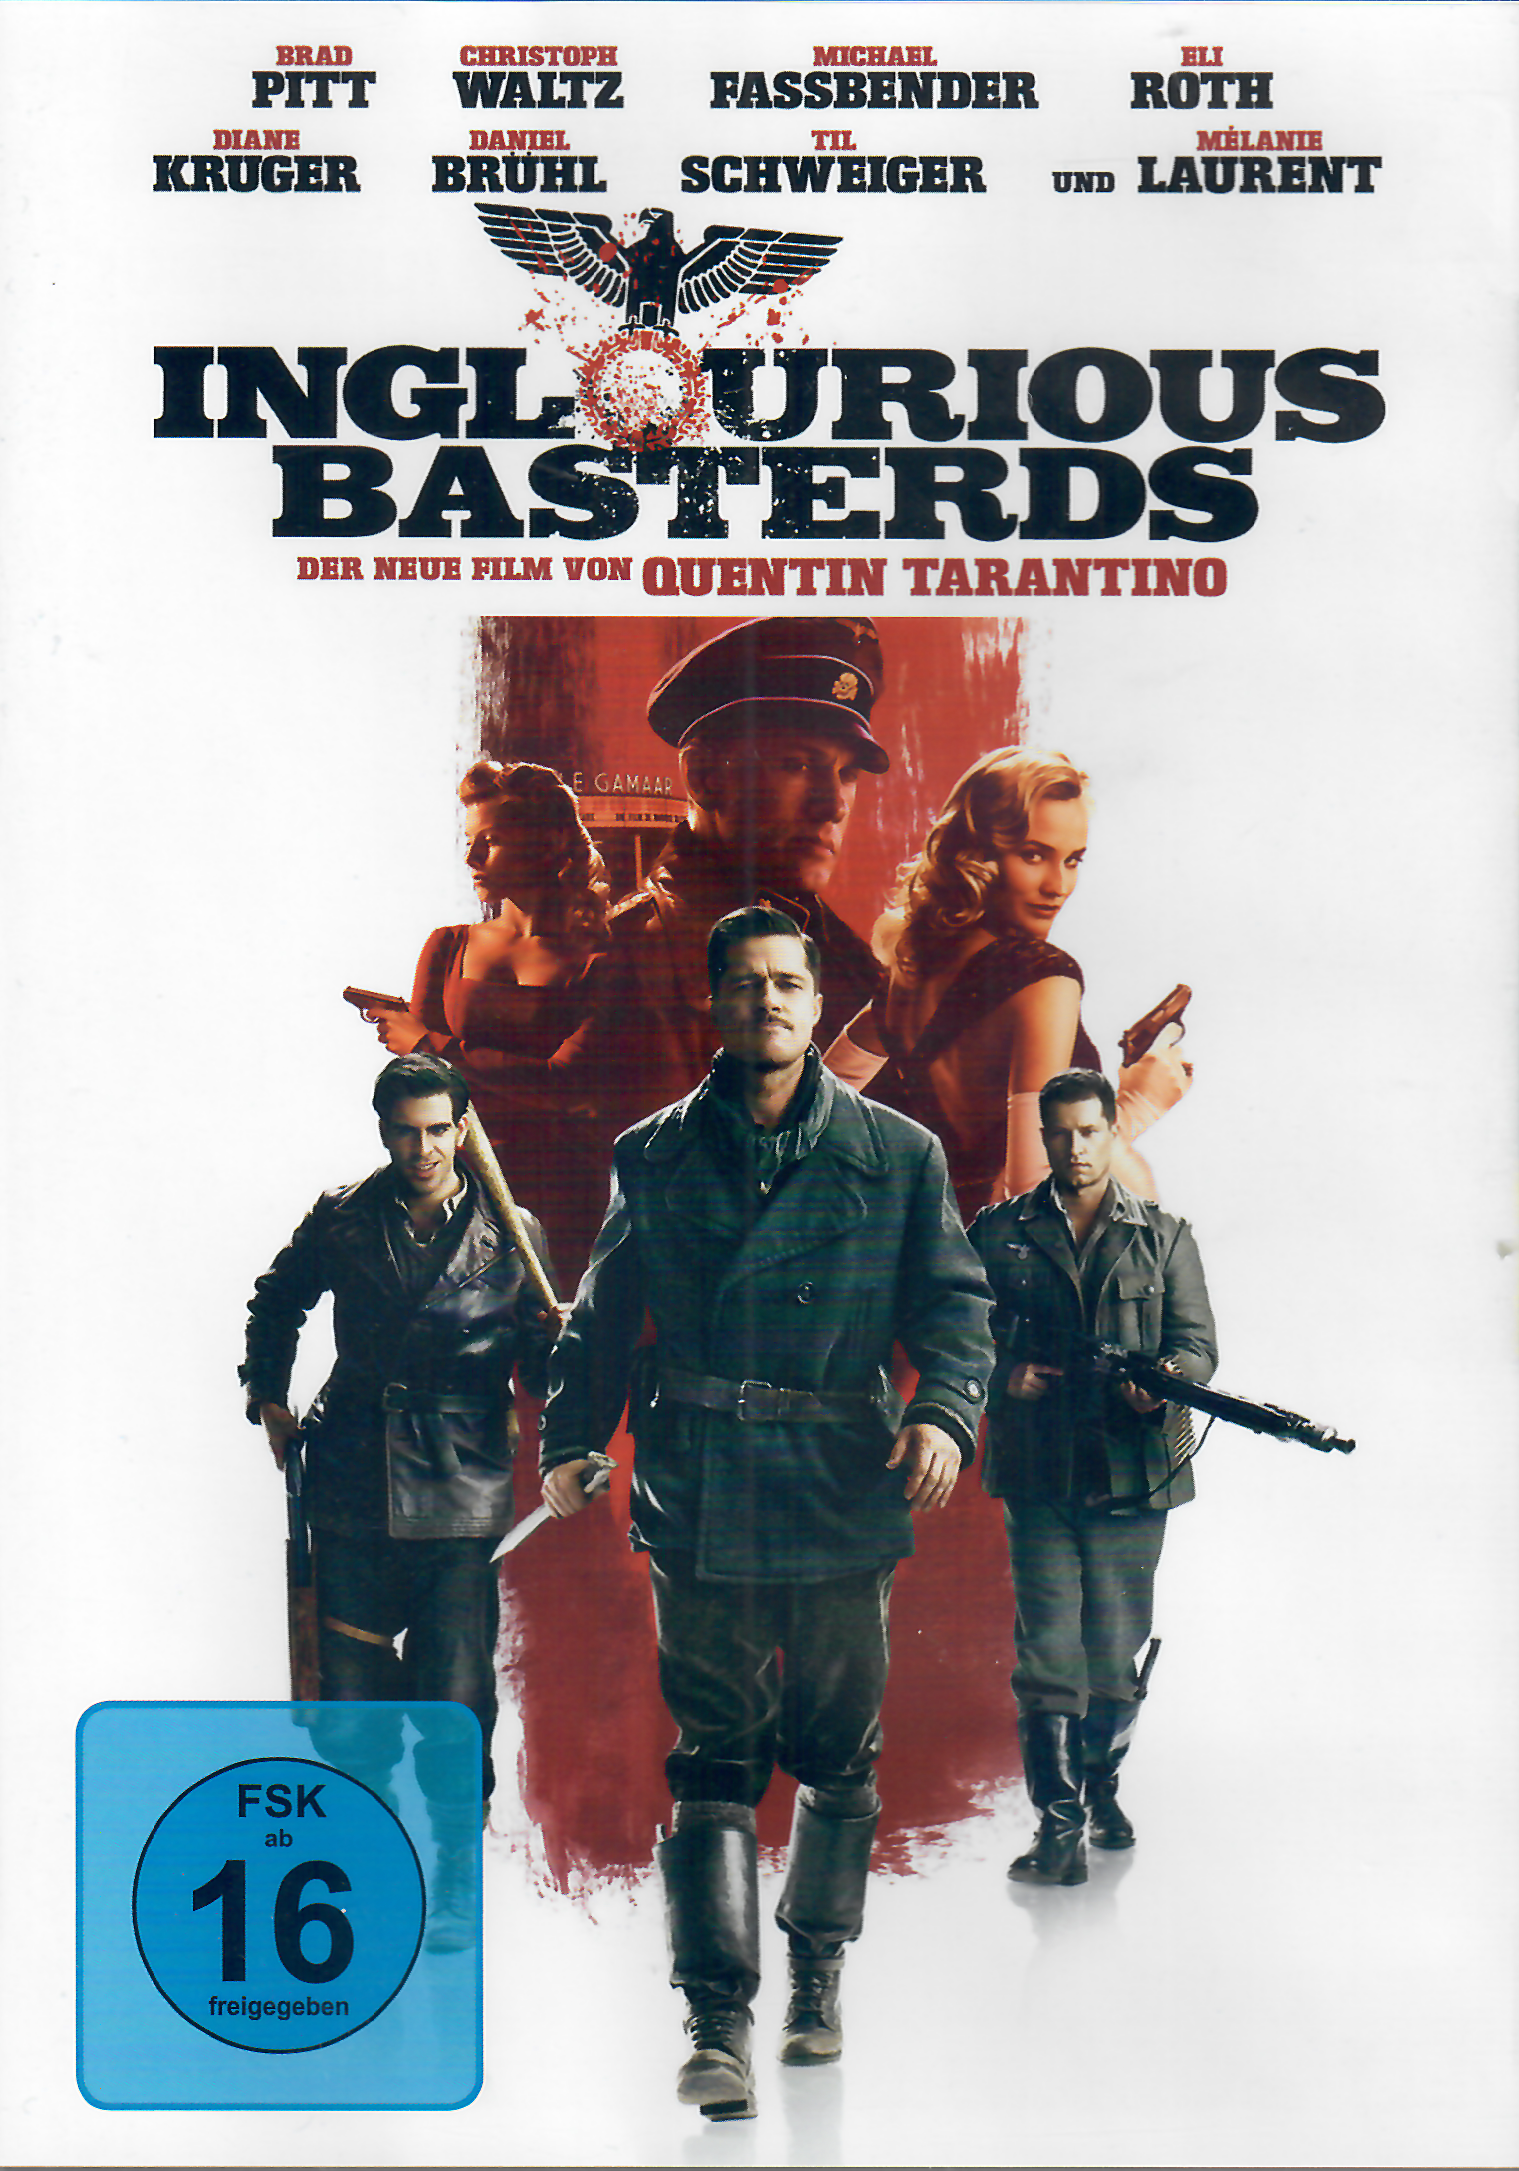 DVD Inglorious Basterds